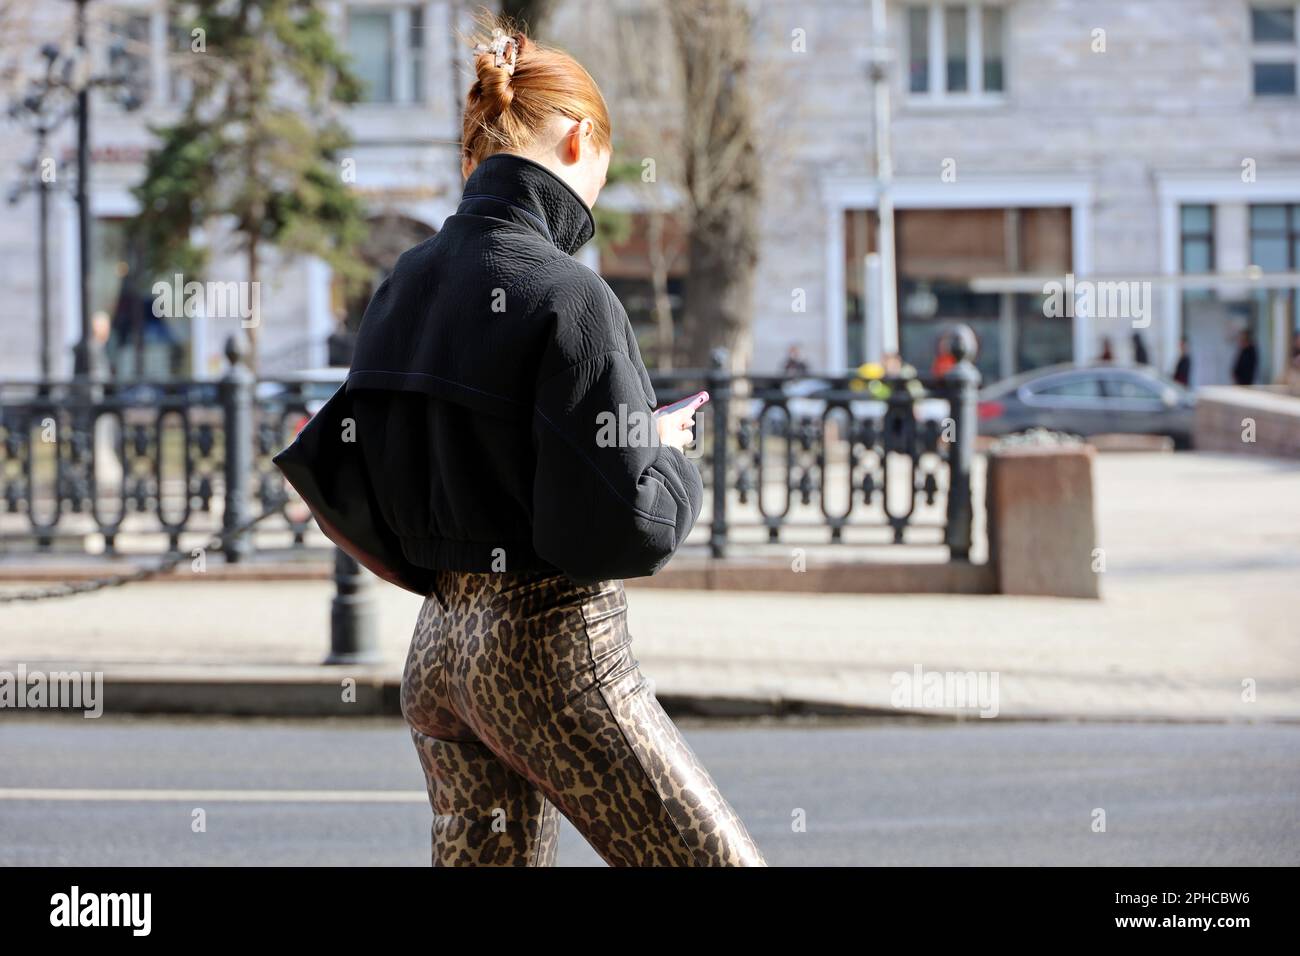 Rothaarige Frau in Hose mit Leopardenmuster, die mit einem Smartphone auf einer Straße steht. Weibliche Mode, die in der Frühlingsstadt mit dem Handy telefoniert Stockfoto